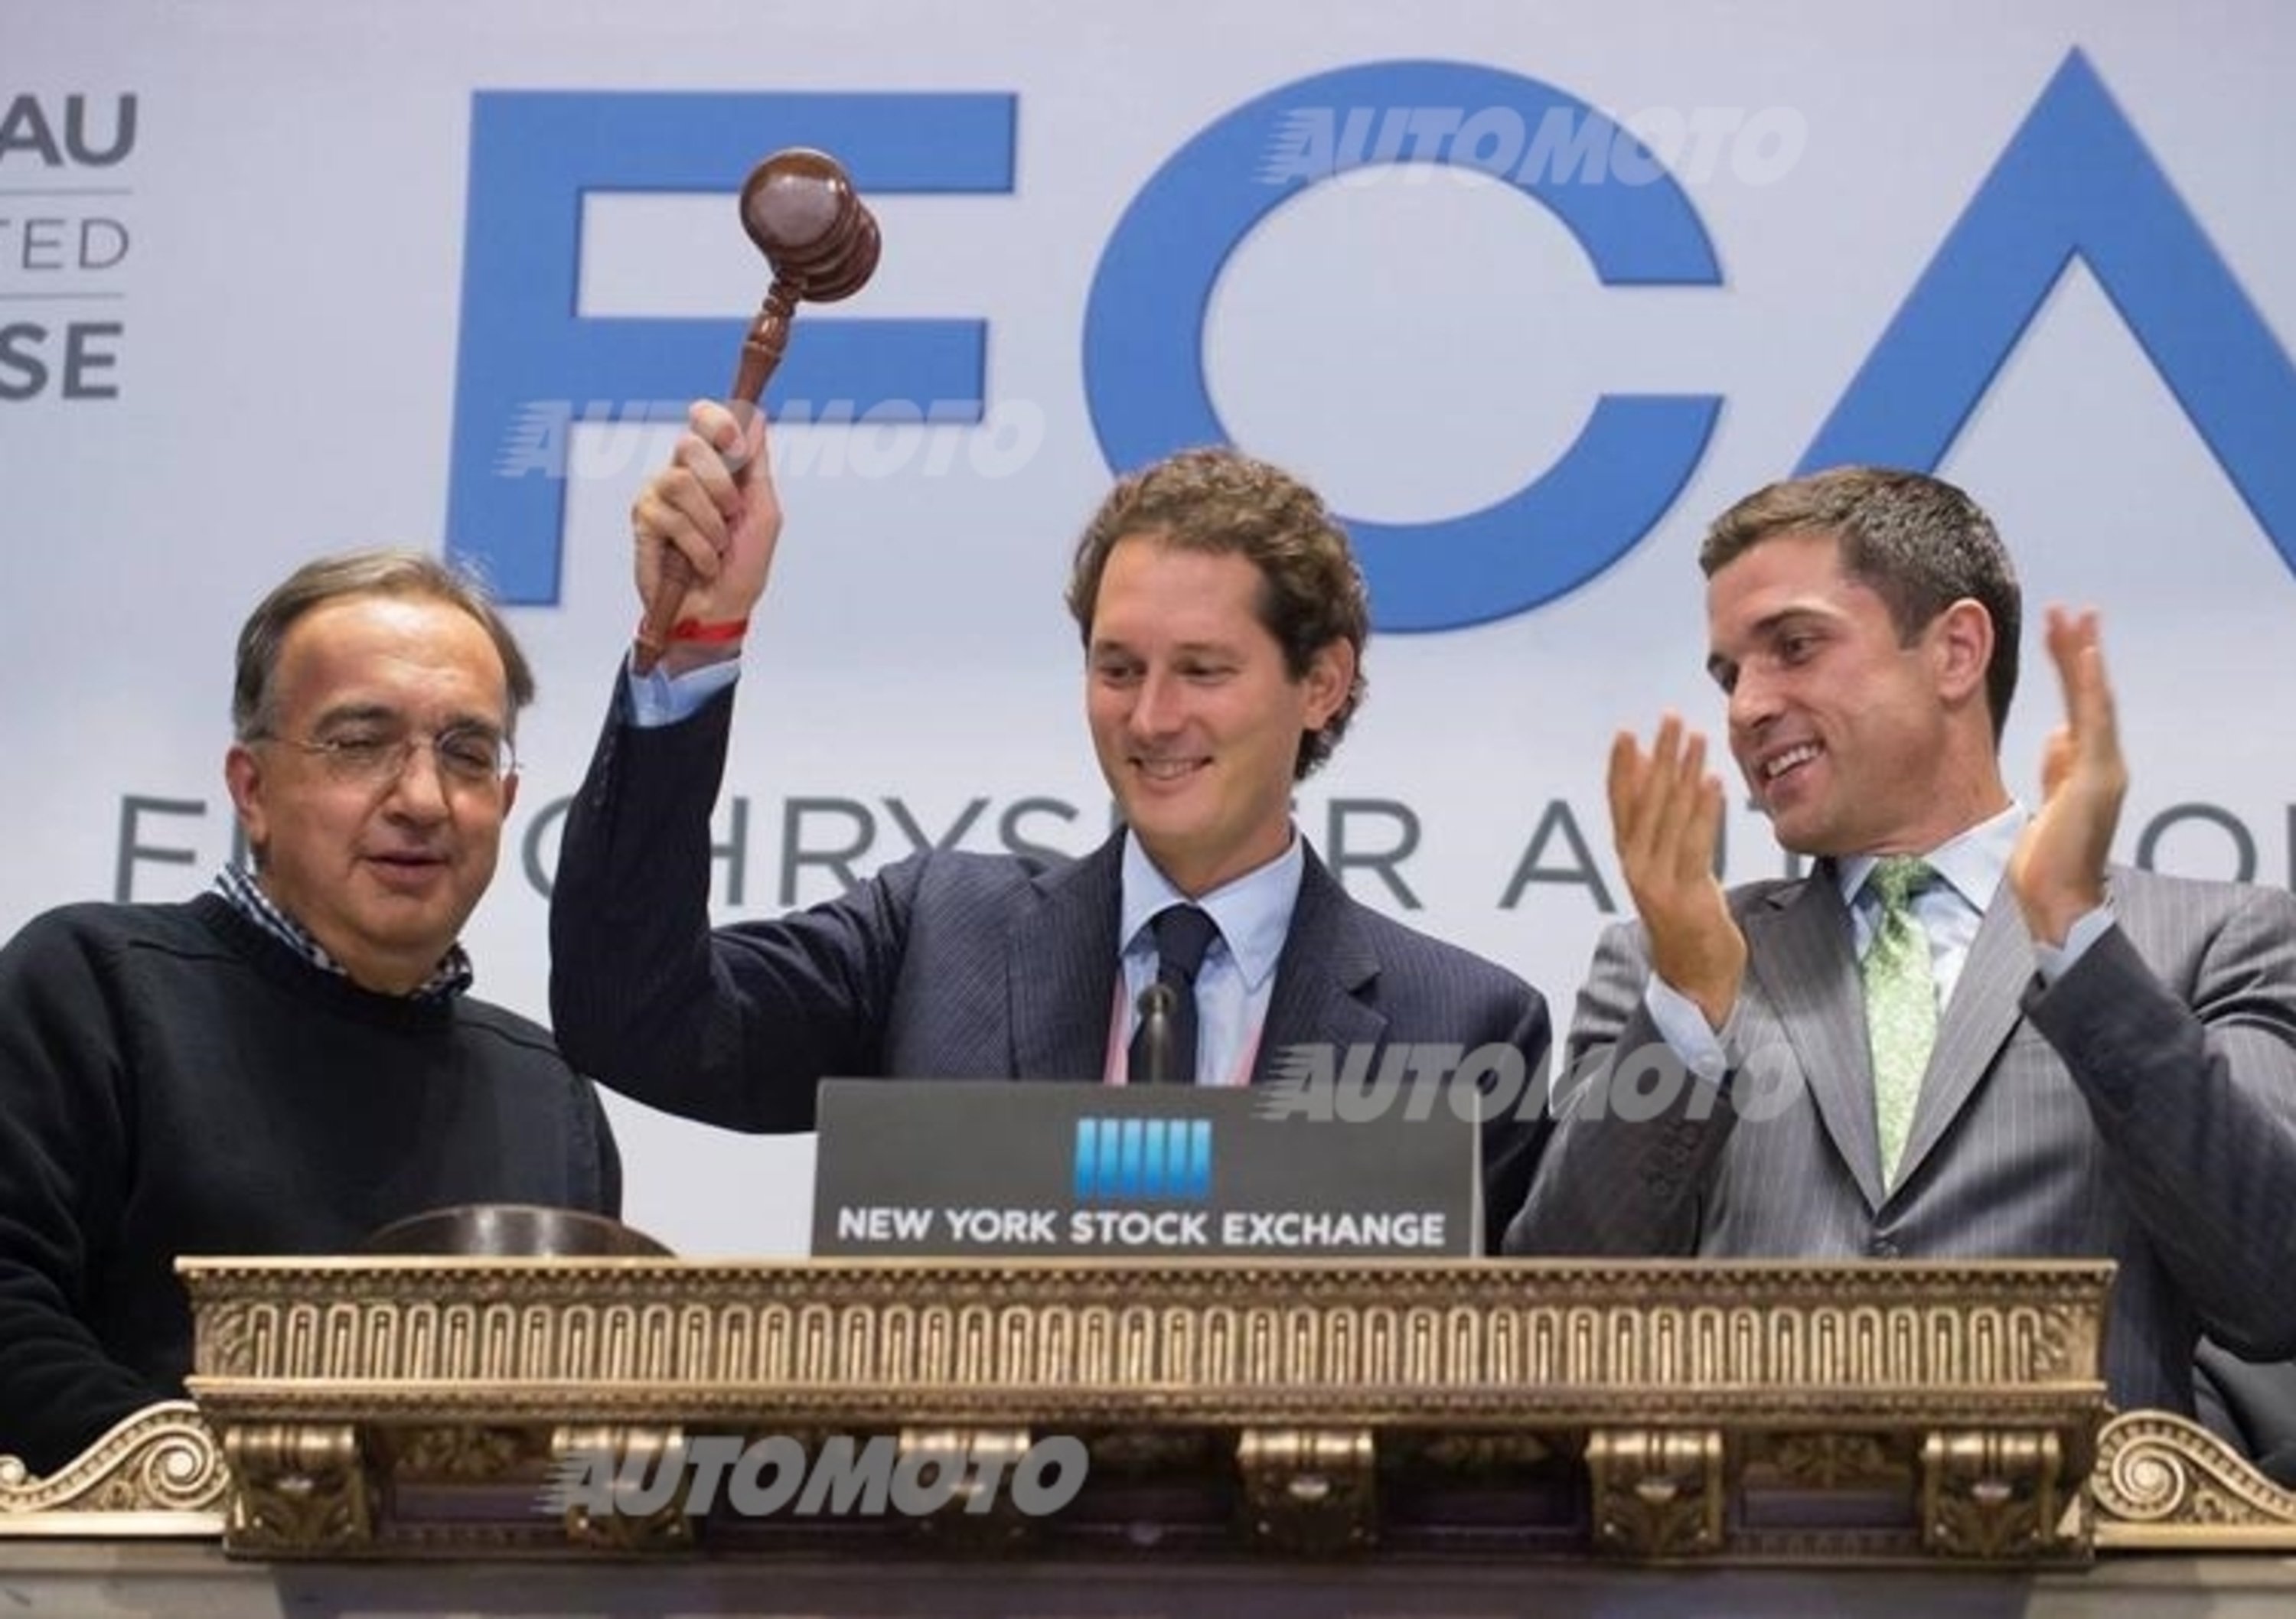 FCA sbarca a Wall Street. La cronologia della scalata verso la Borsa americana